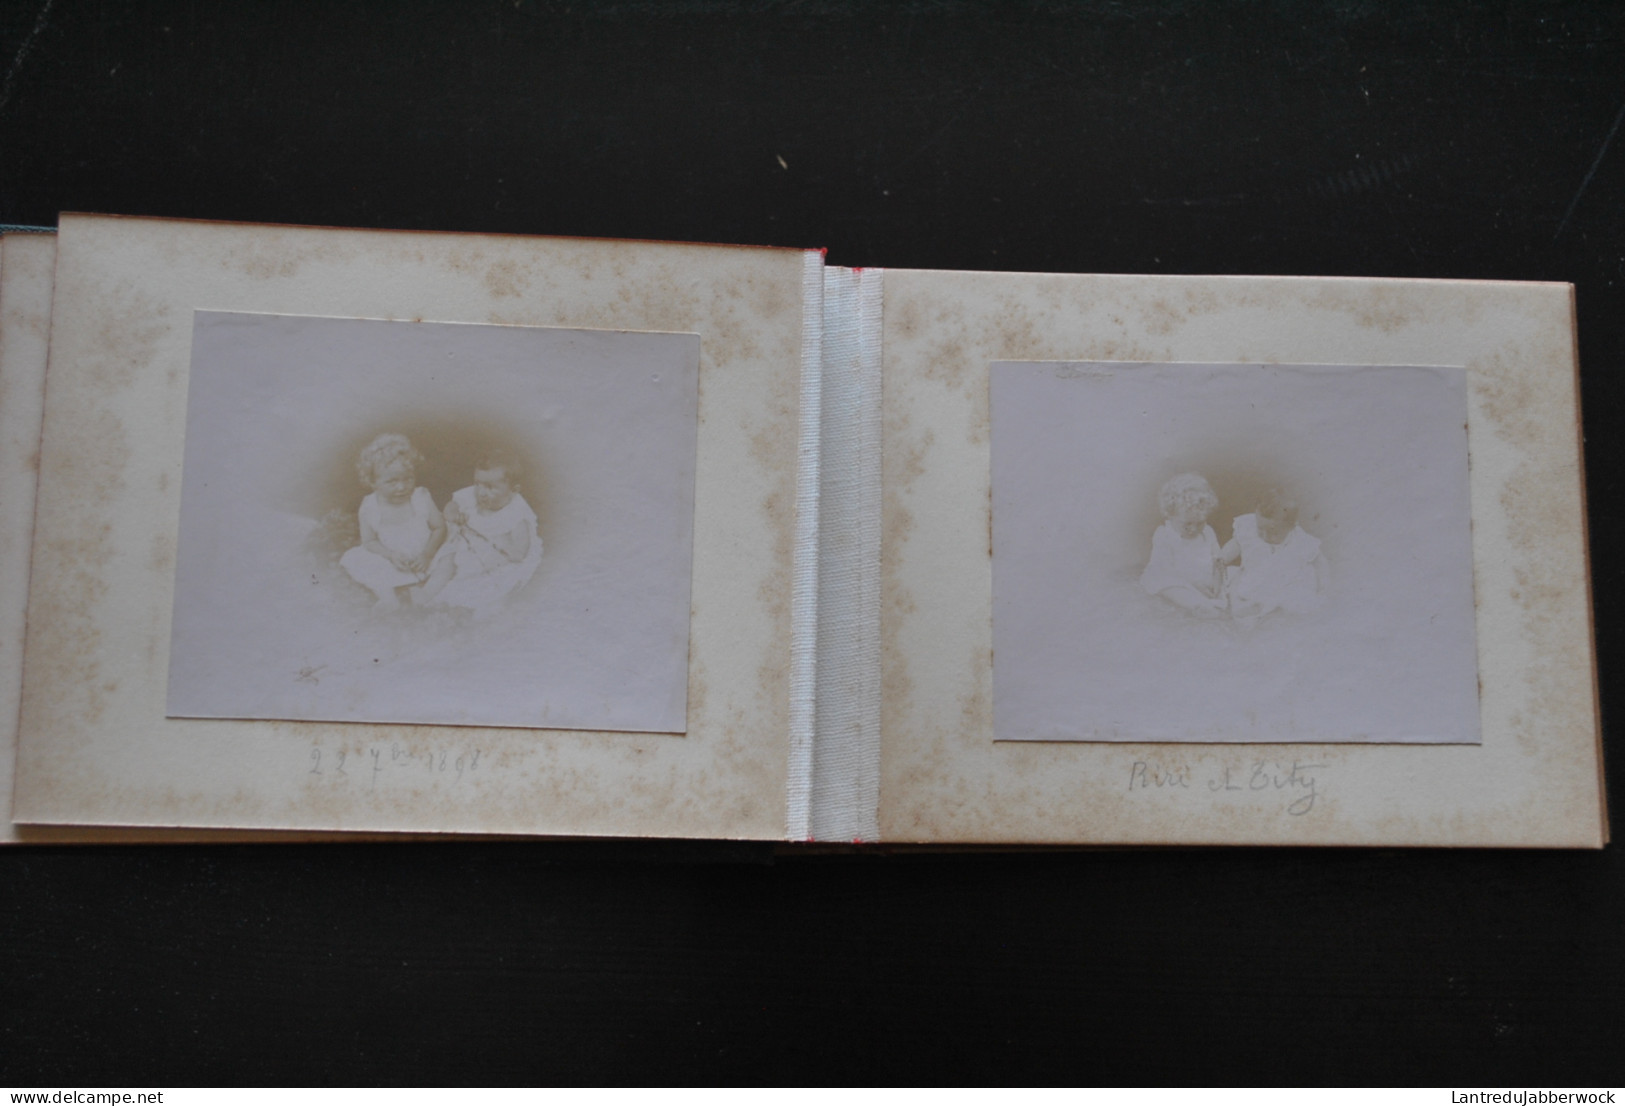 Petit album photo oblong (17.5 x 10.5 cm) quasi vide XIXè bébé enfants